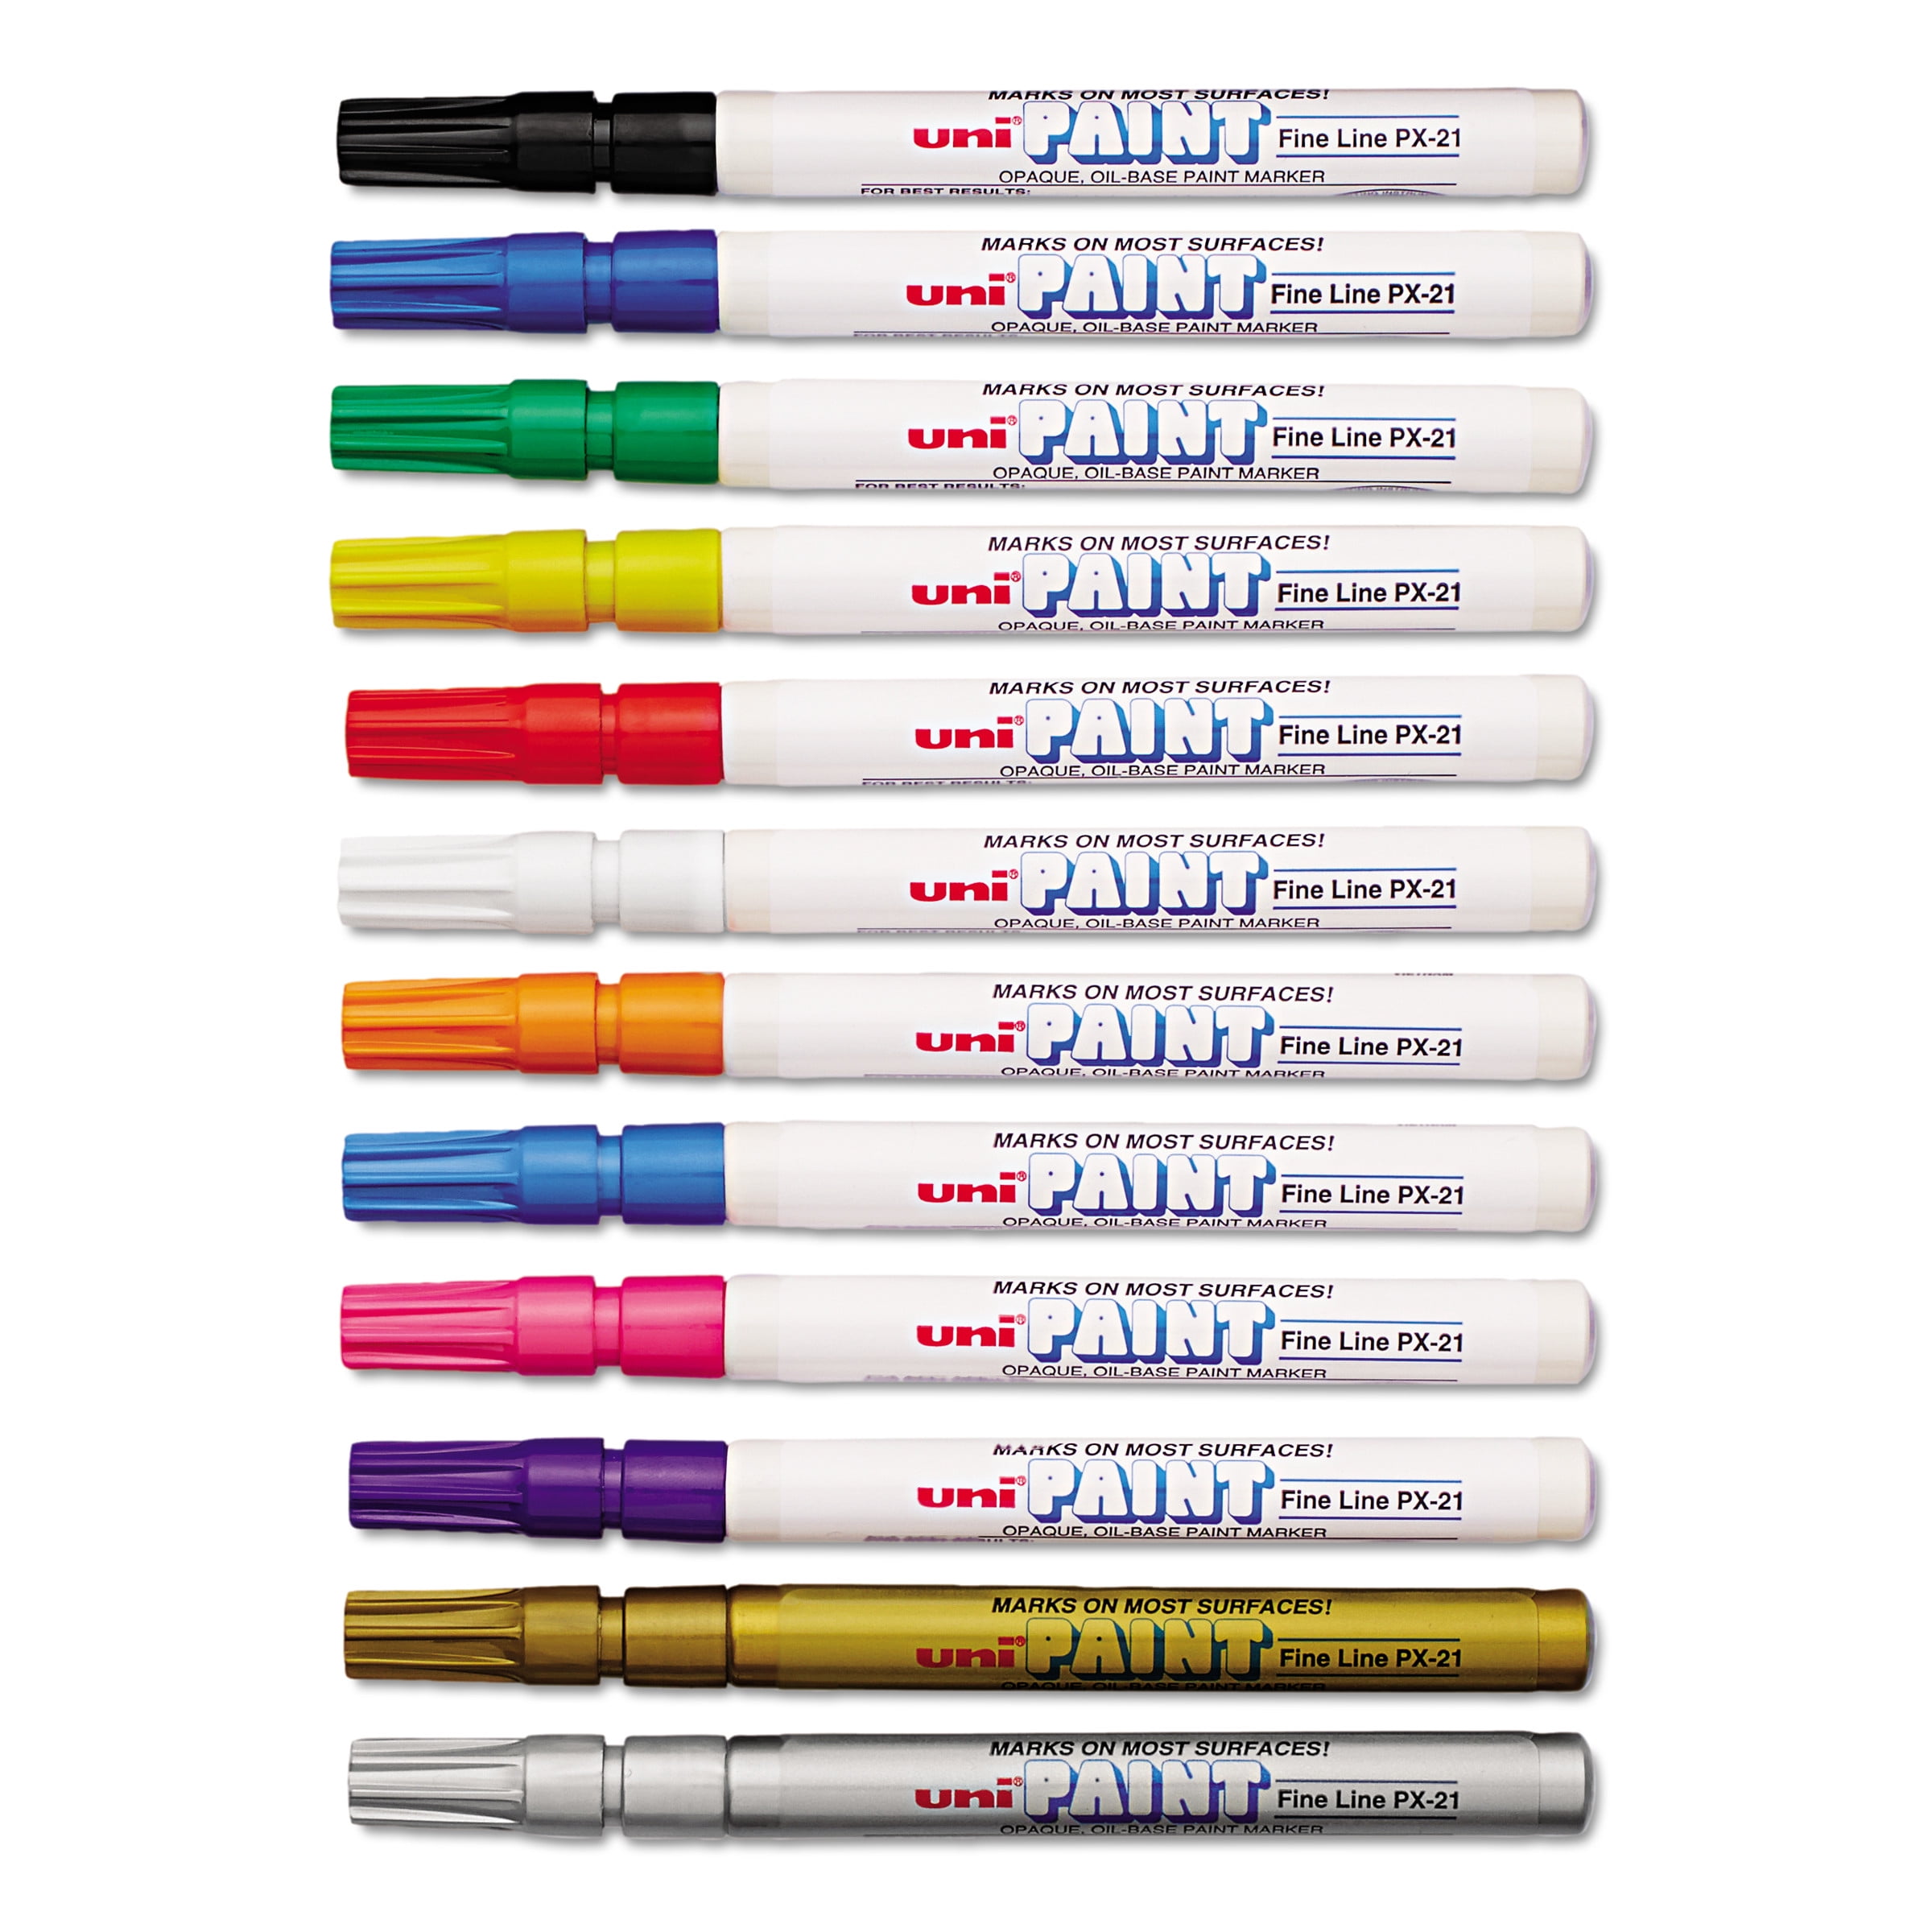 12 Piece Multi-Surface Oil Based Paint Pens Set